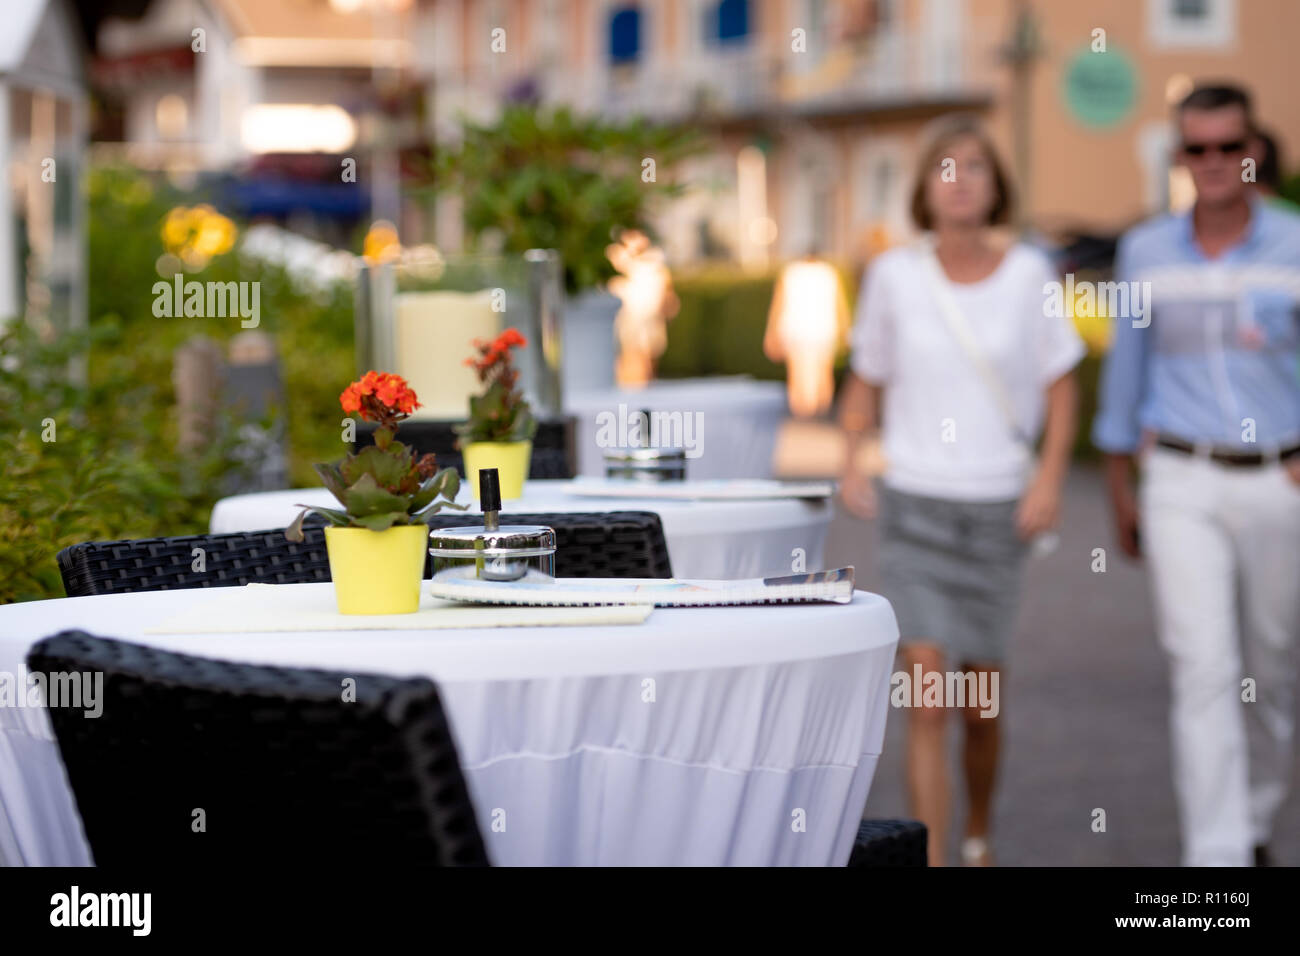 KLAGENFURF, Carinzia, Austria - 07 agosto 2018: Cafe tabelle su strada. In fondo è una strada con sagome umane. Foto Stock